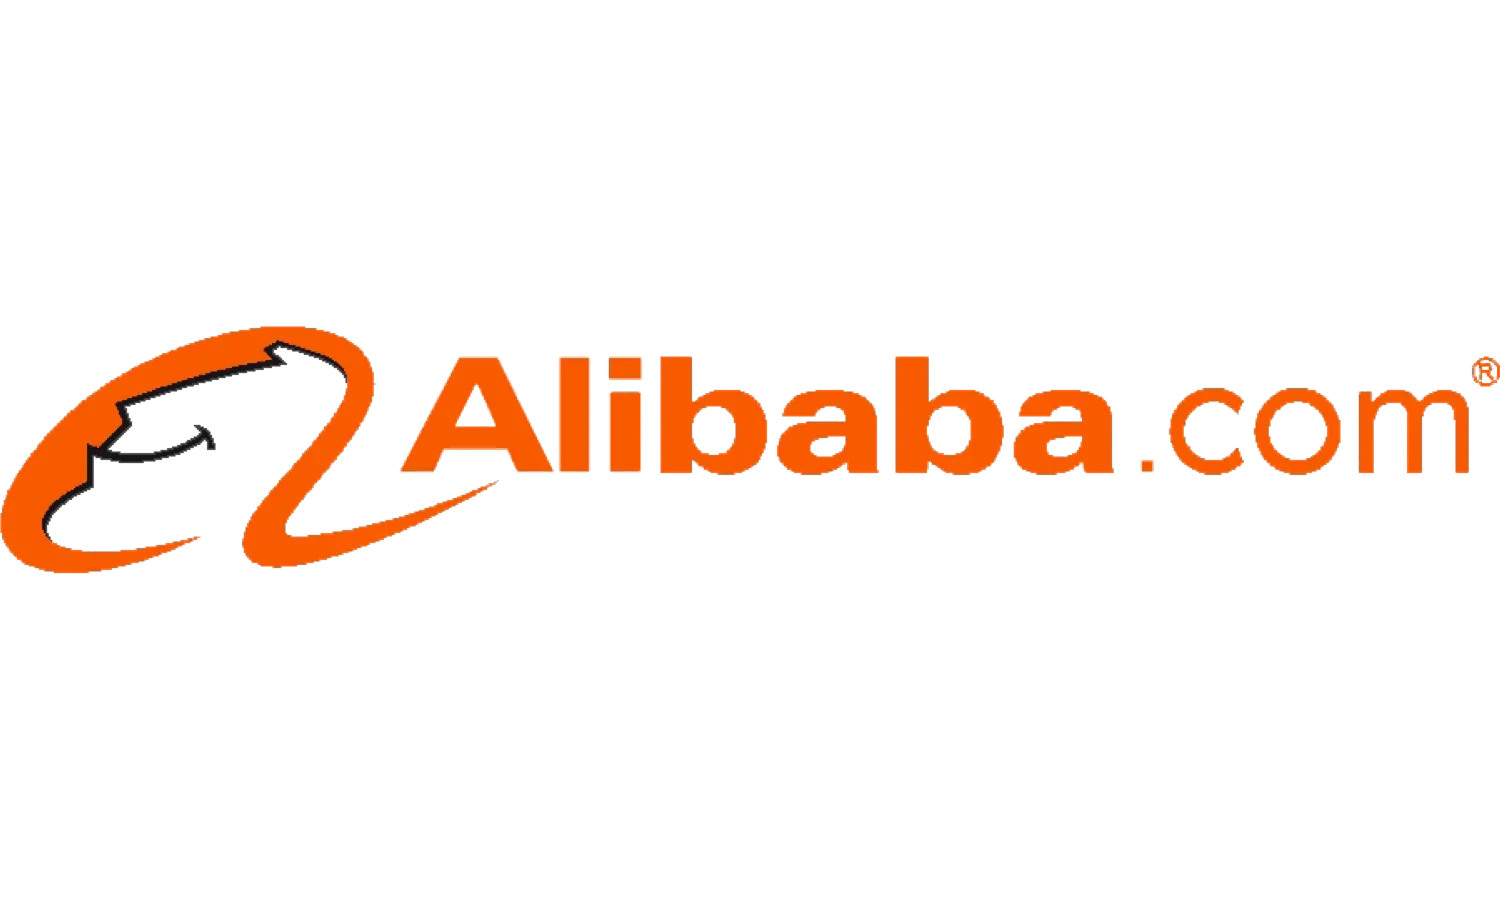 Alibaba Gutschein 